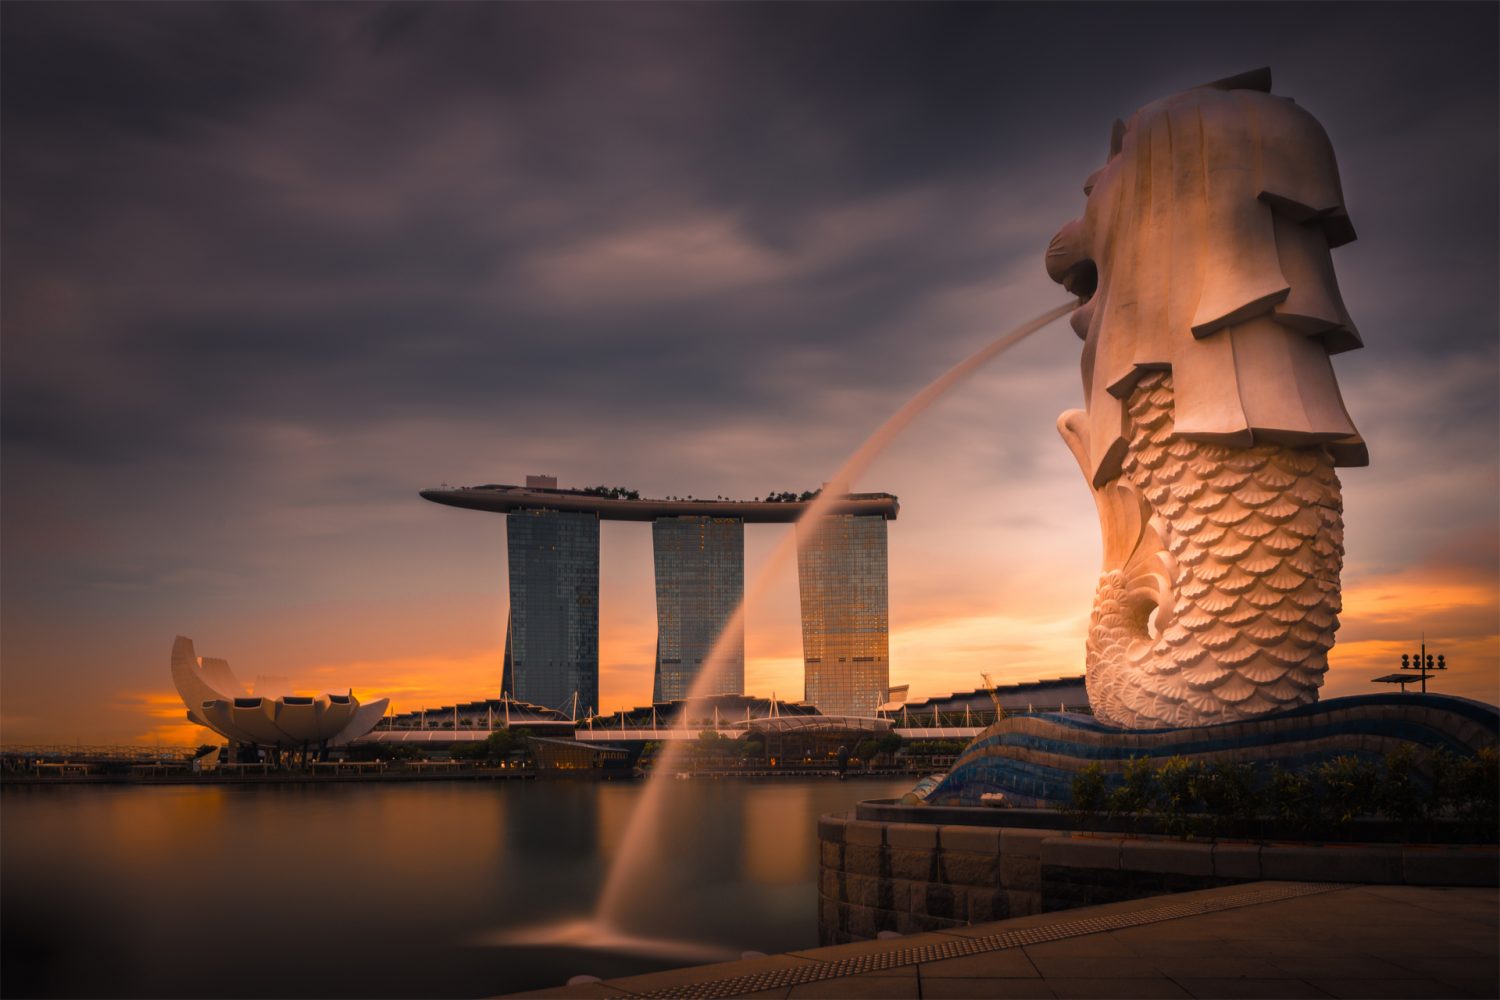 Beautiful sunset at Singapore